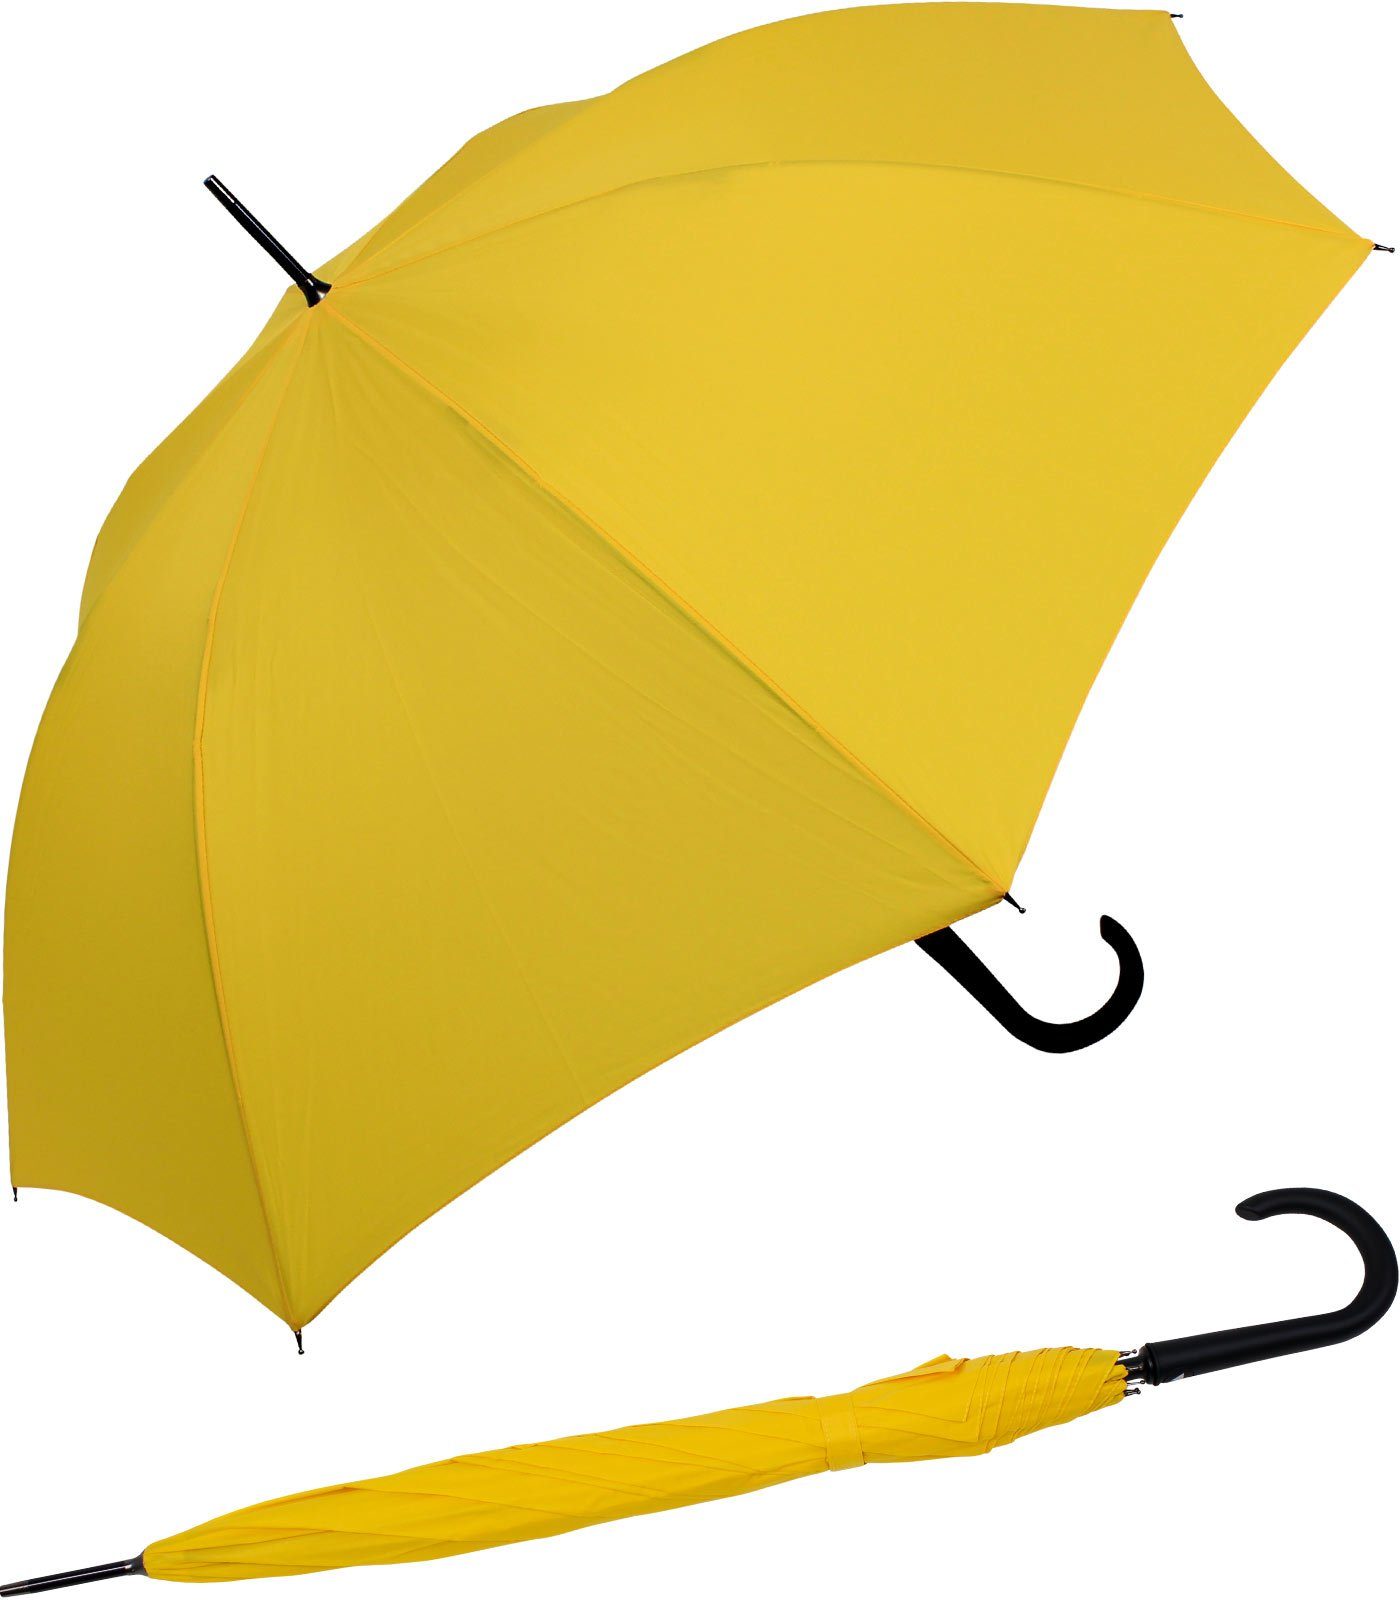 RS-Versand Langregenschirm großer gelb Auf-Automatik, Regenschirm Stahl-Fiberglas-Gestell, integrierter Auslöseknopf mit stabiler